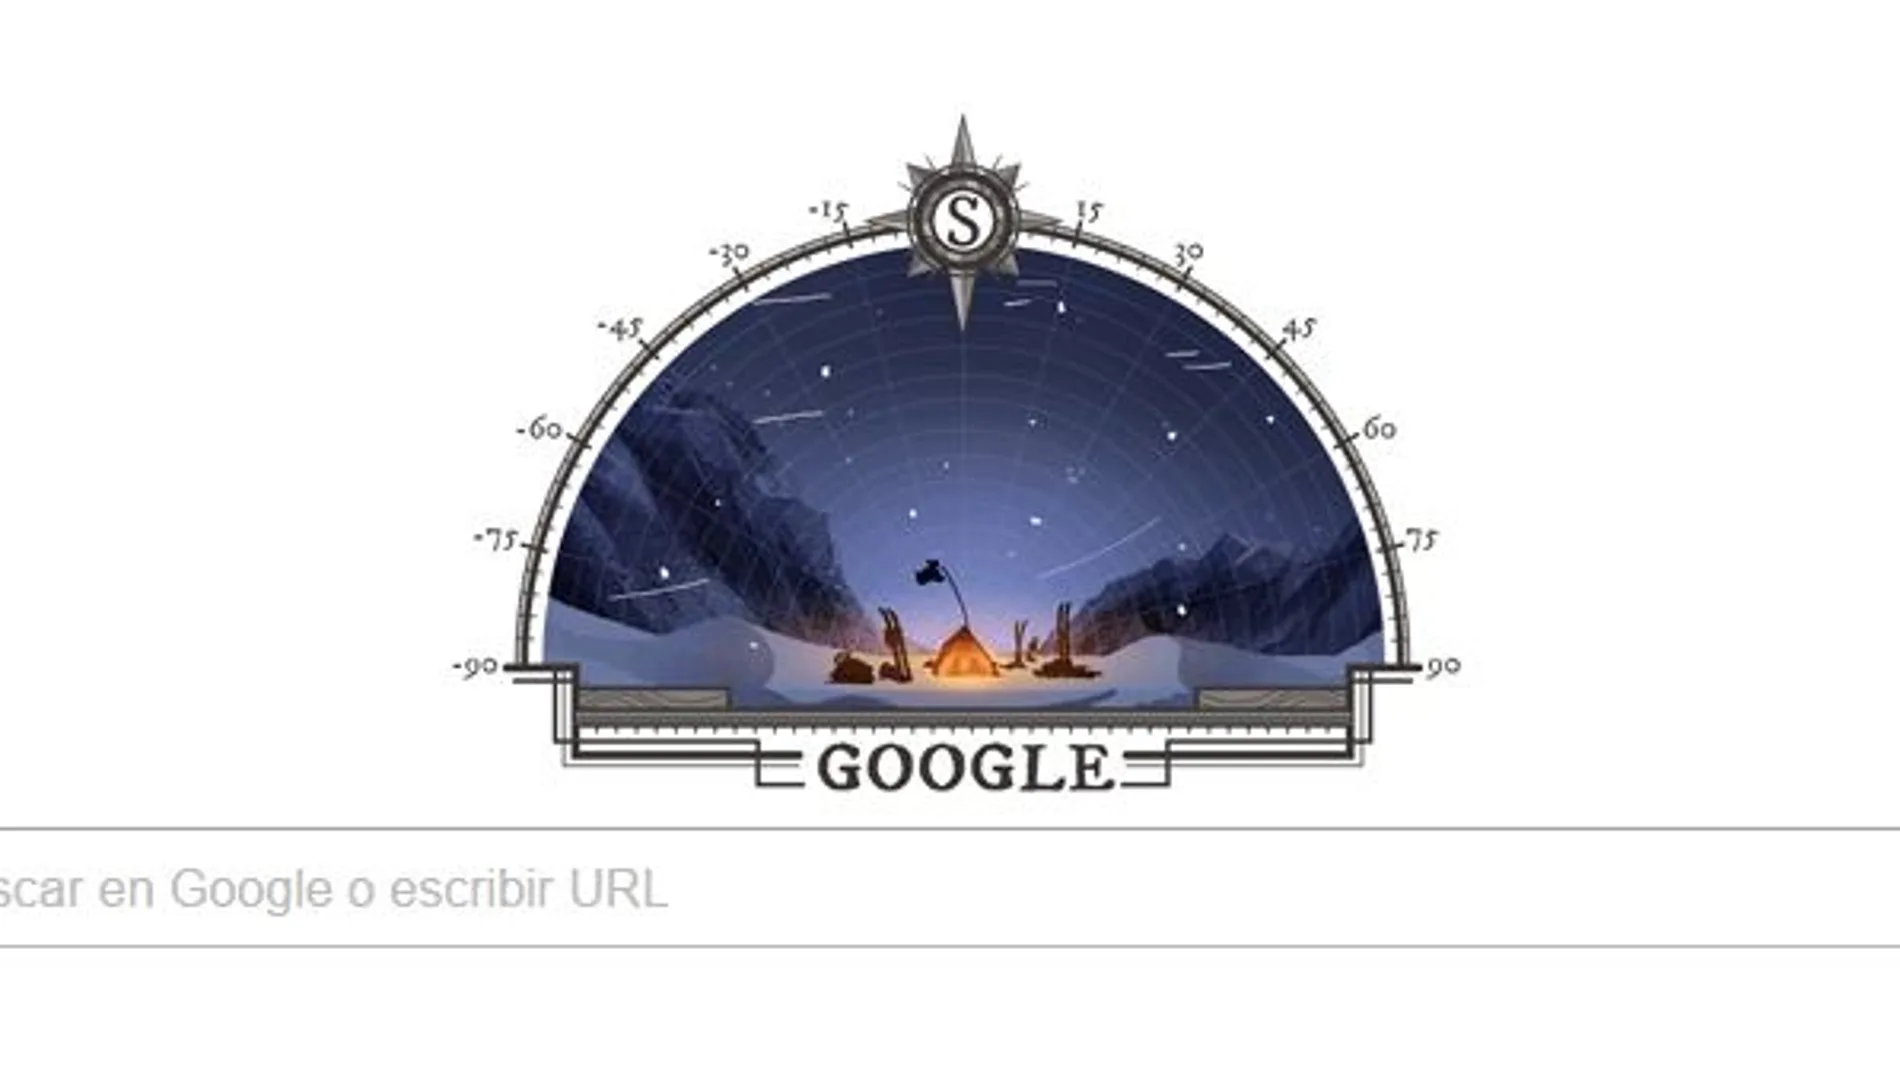 El doodle de Google dedicado a la conquista del Polo Sur